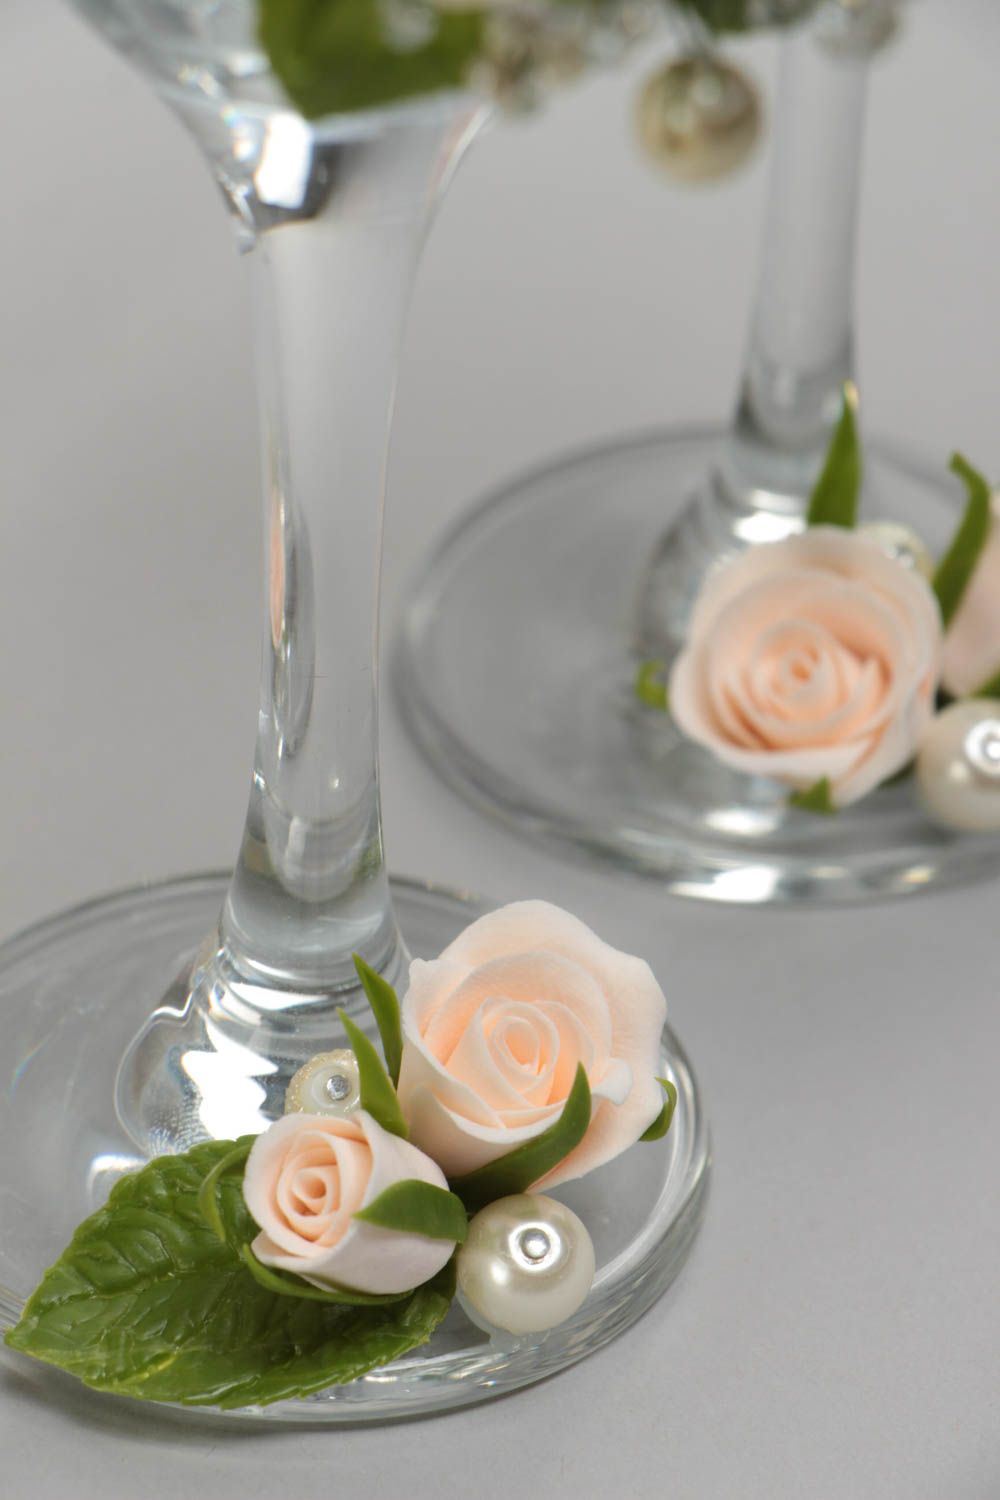 Бокалы на свадьбу с розами ручной работы красивые оригинальные 2 штуки фото 4